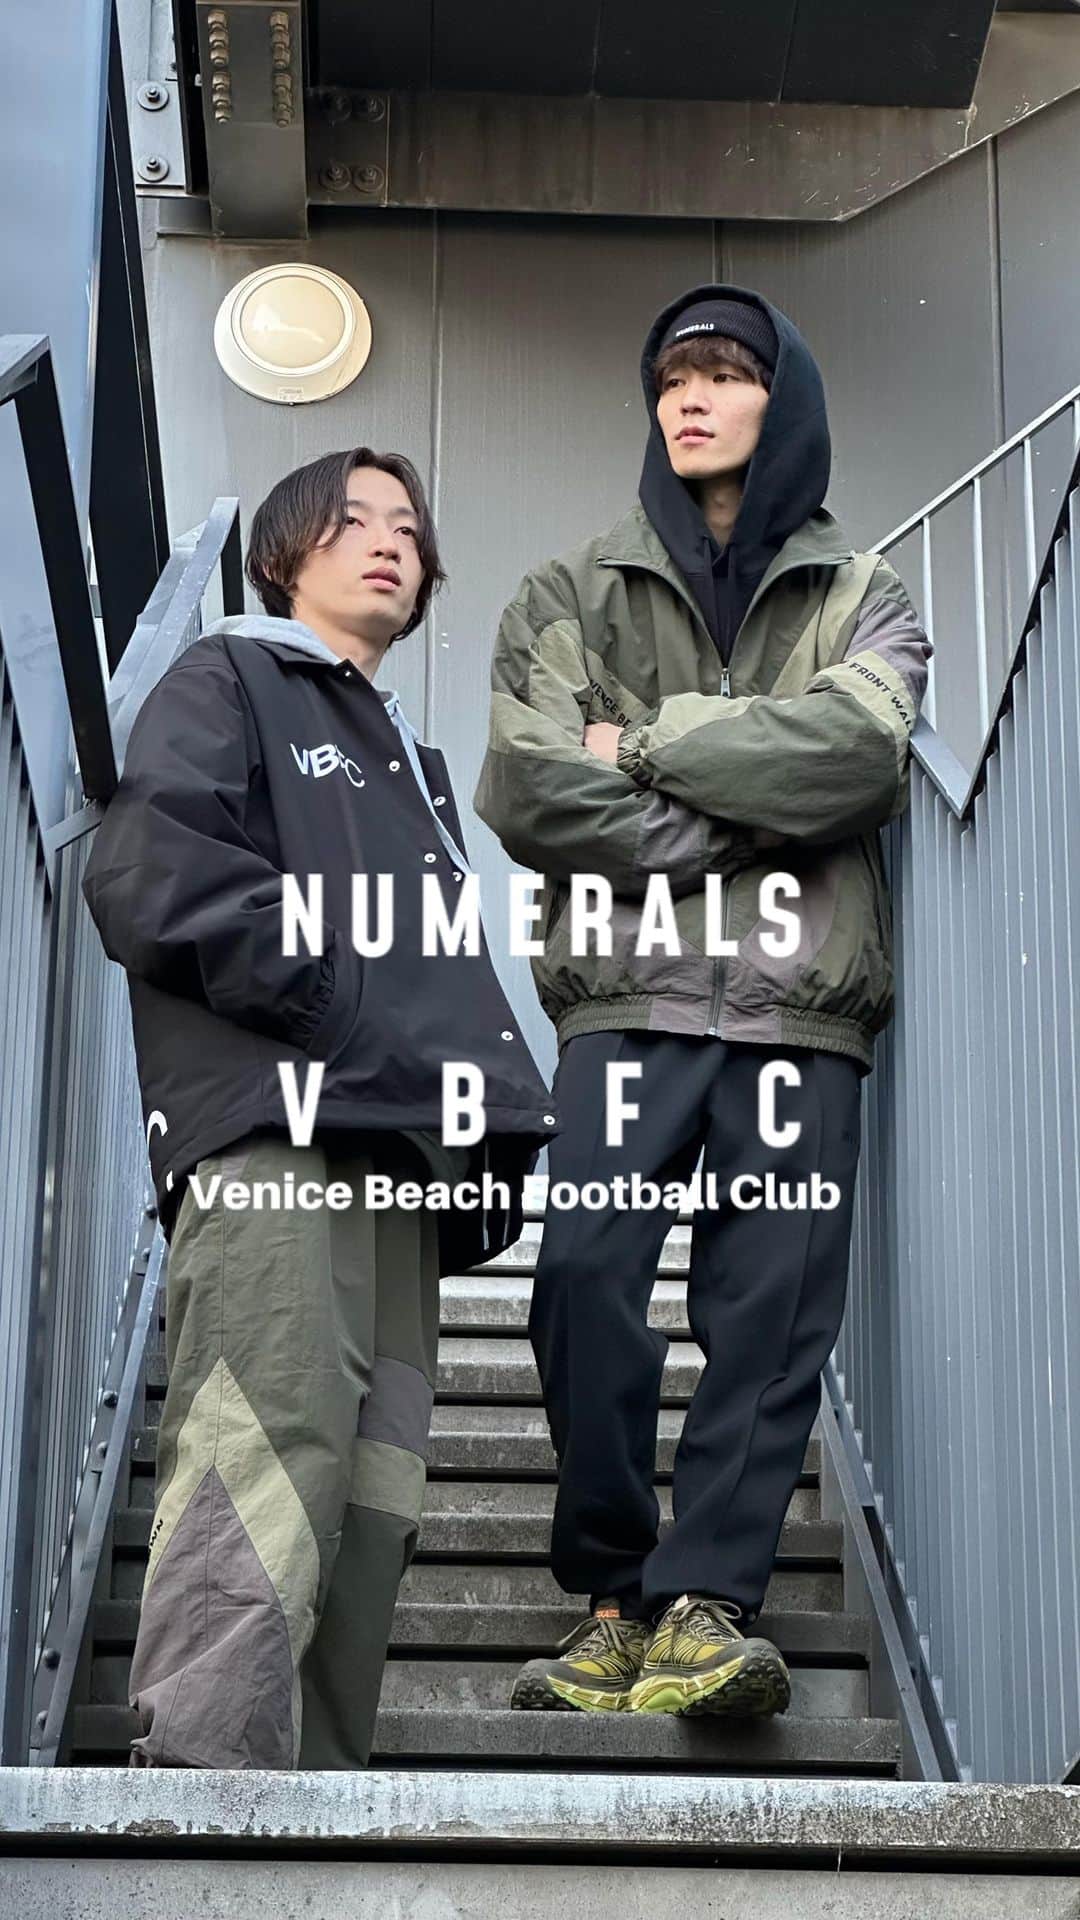 ニコアンドのインスタグラム：「【VBFC】 NUMERALS(ヌメラルズ)から、ロサンゼルスのサッカーコ ミュニティ「VBFC(Venice Beach Football Club)」のアパ レルラインの販売をスタート。 洗練されたロゴデザインをシンプルに落とし込んだストリー トテイストを匂わすコレクションをチェック。 VBFCはアメリカのサッカー風景を変えるために、選手、コ ーチ、ファン、アーティスト、ミュージシャン、誇り高き地 元の人々によって設立されたコミュニティクラブ。 近年ではスポーツブランドやスポーツチームとのコラボレー ションも行い、世界的な影響を生み出している。 Venice Beach Football Club, or VBFC, is a community club built by current & washed up talent from the Los Angeles neighborhood of Venice, California. Home of the dreamers, drifters, nobodies, and somebodies. The club can be found playing every week at  their iconic beachside home ground the Estadio De Dogtown. #numerals #ヌメラルズ #VBFC #venicebeachfootballclub」